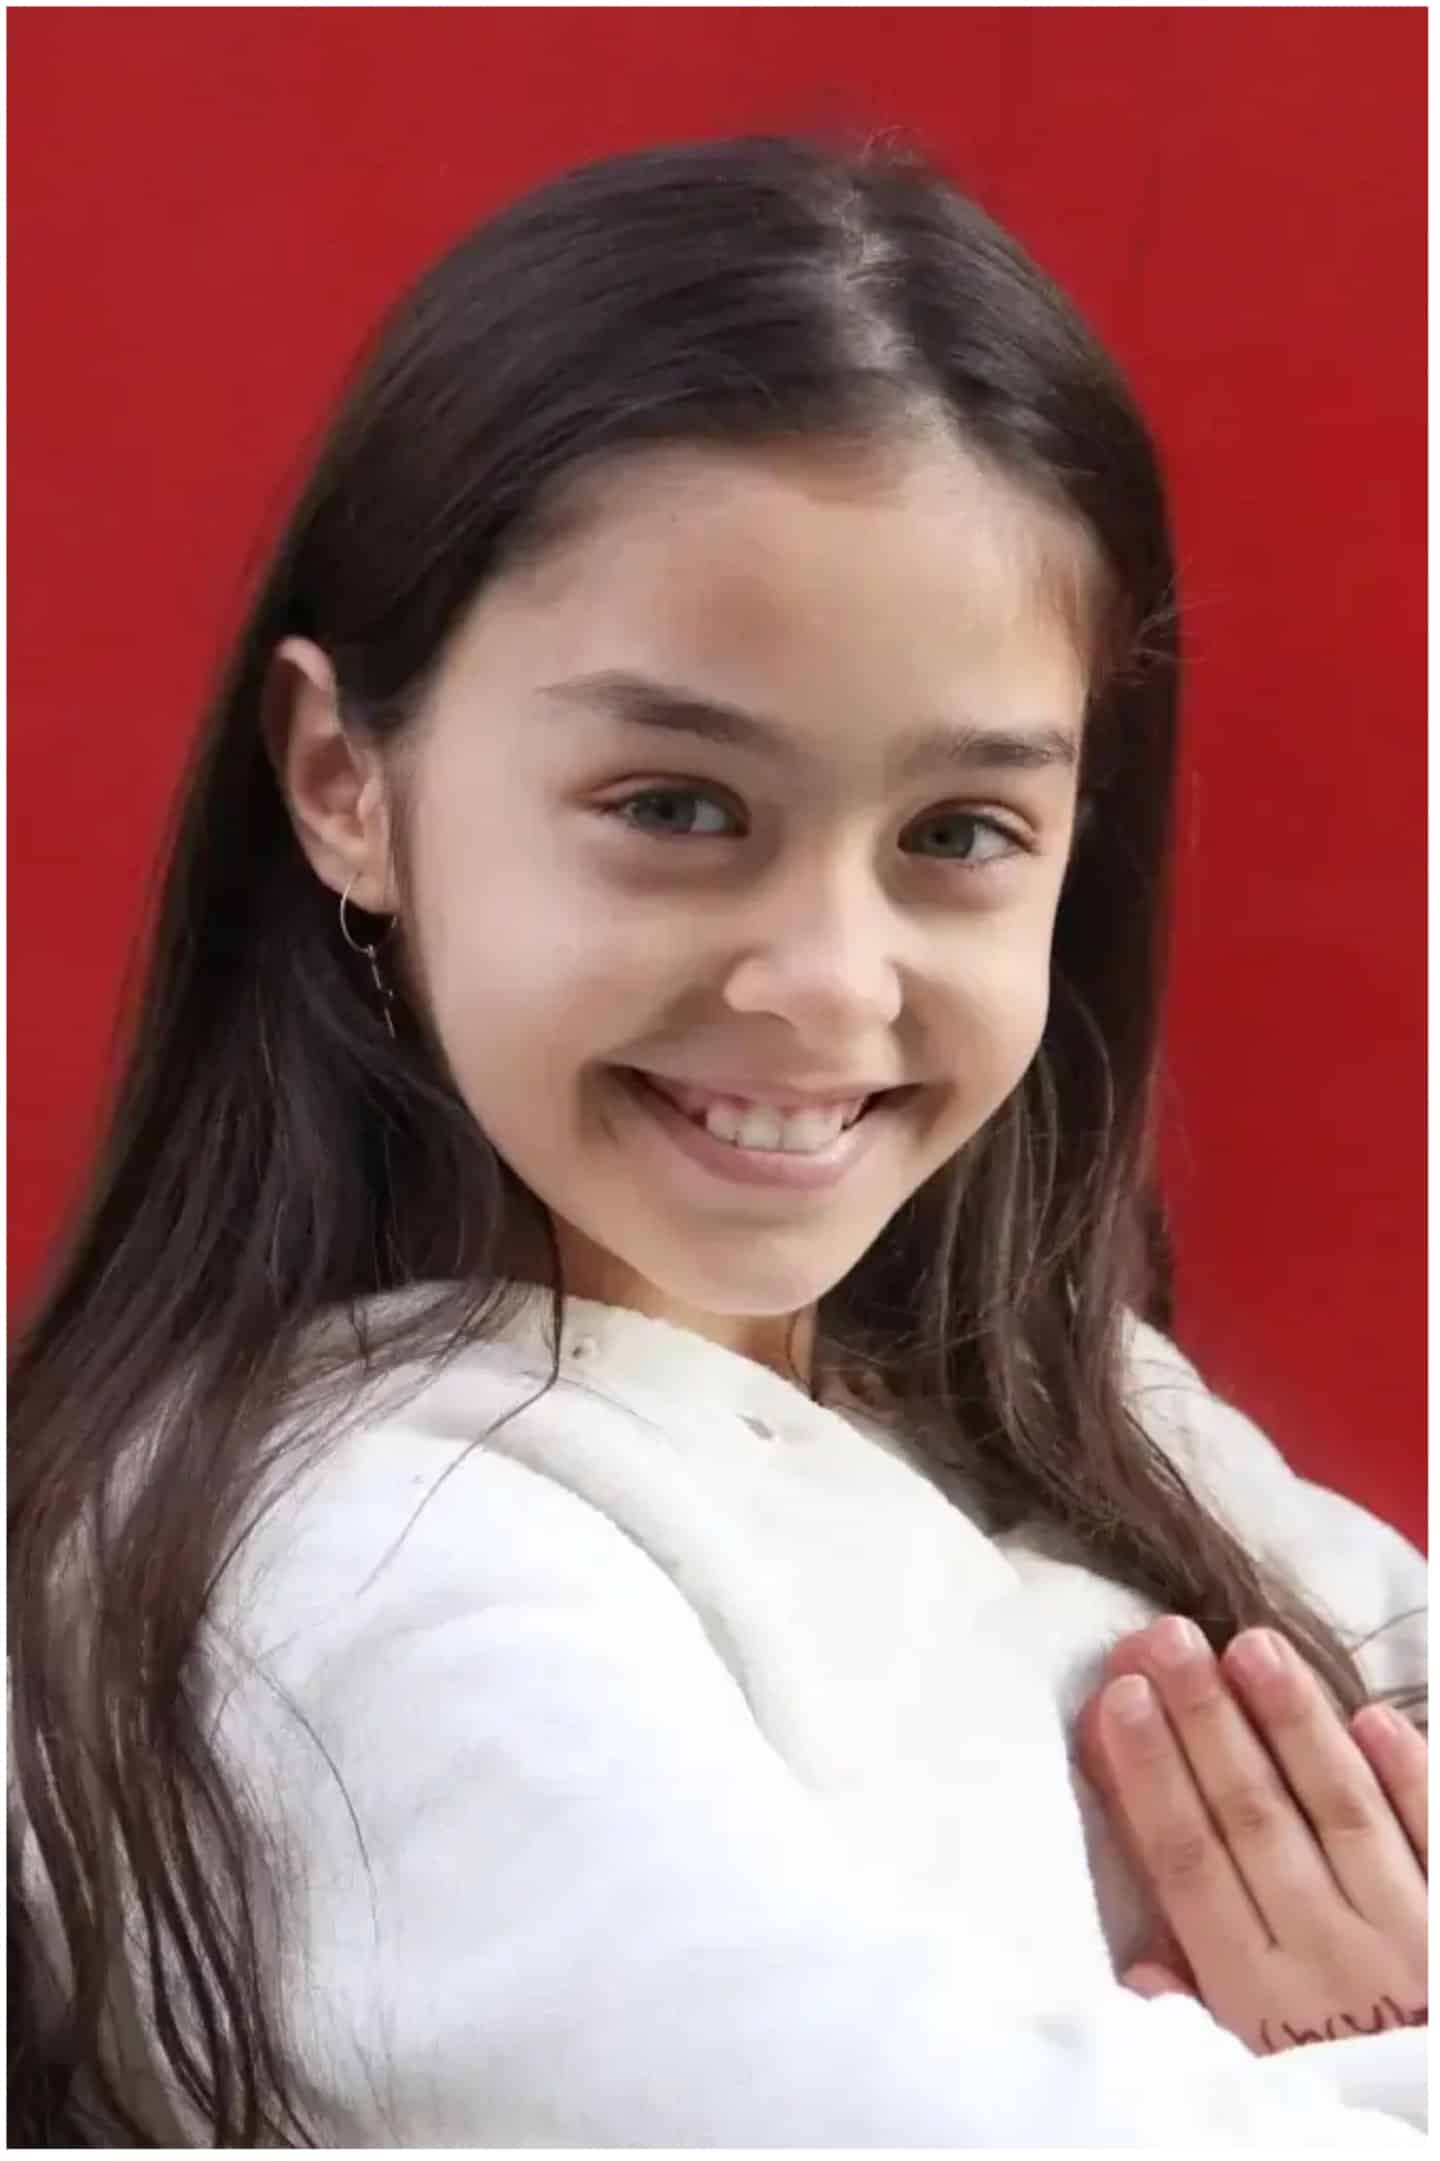 Tacsiz Princess Elif Kurtuaran Actor infantil turco 